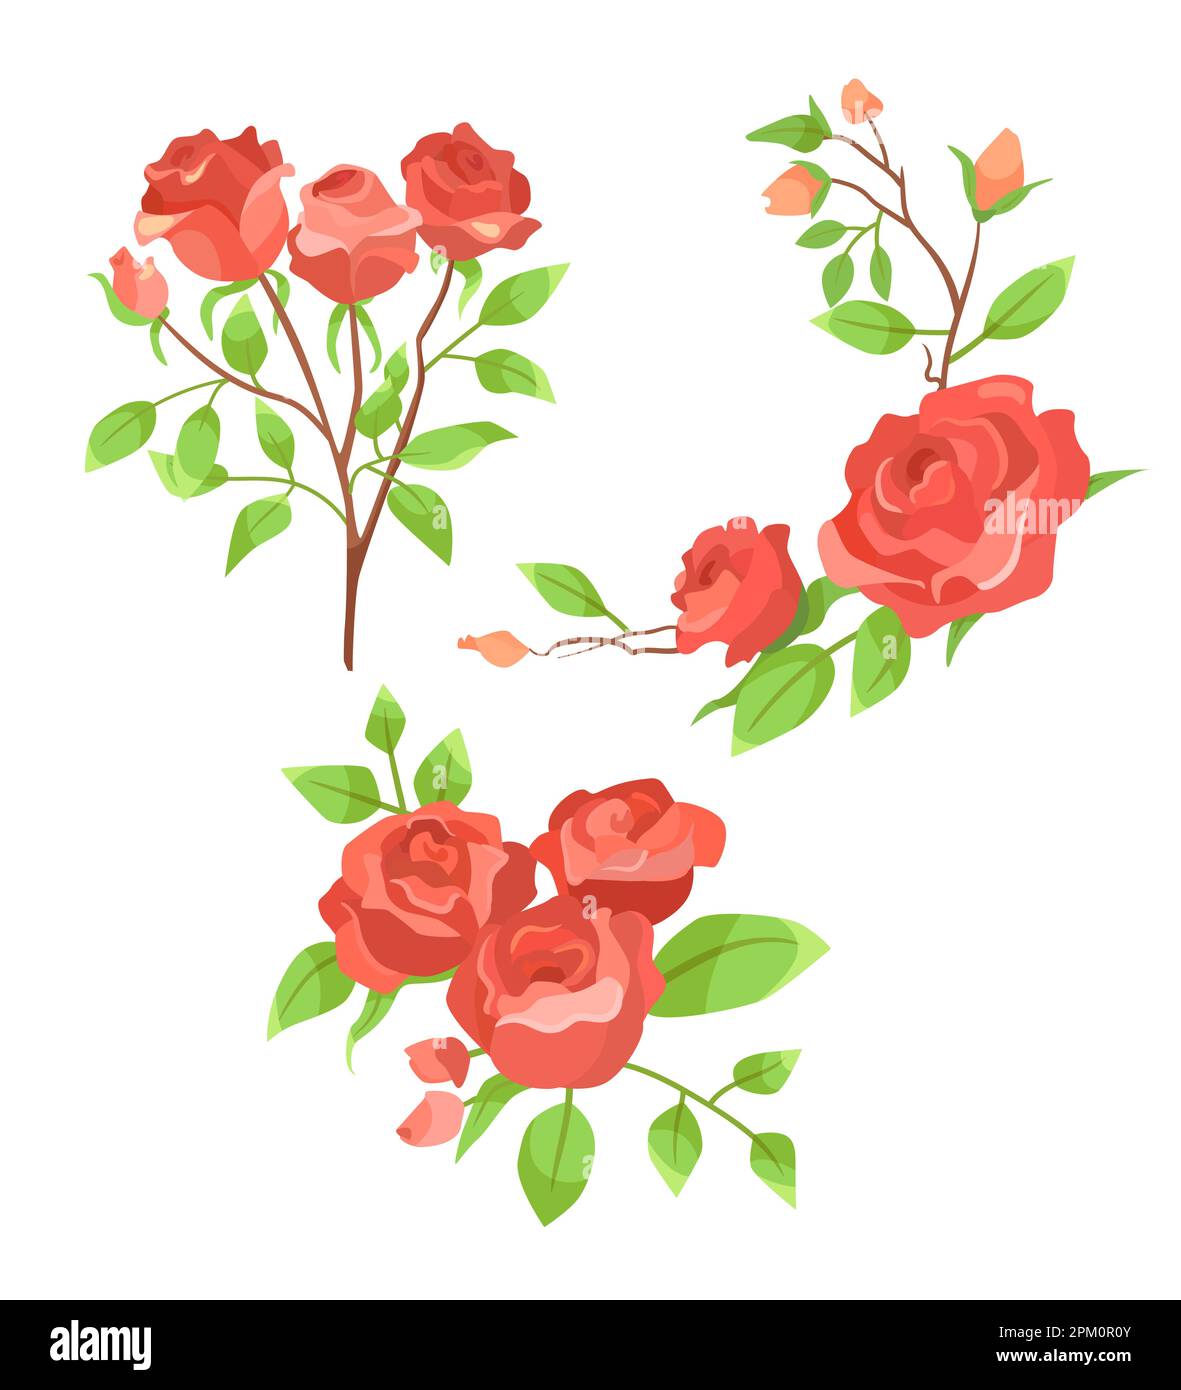 Blühende rote Rosen verzweigen ein Zeichentrickset Stock Vektor